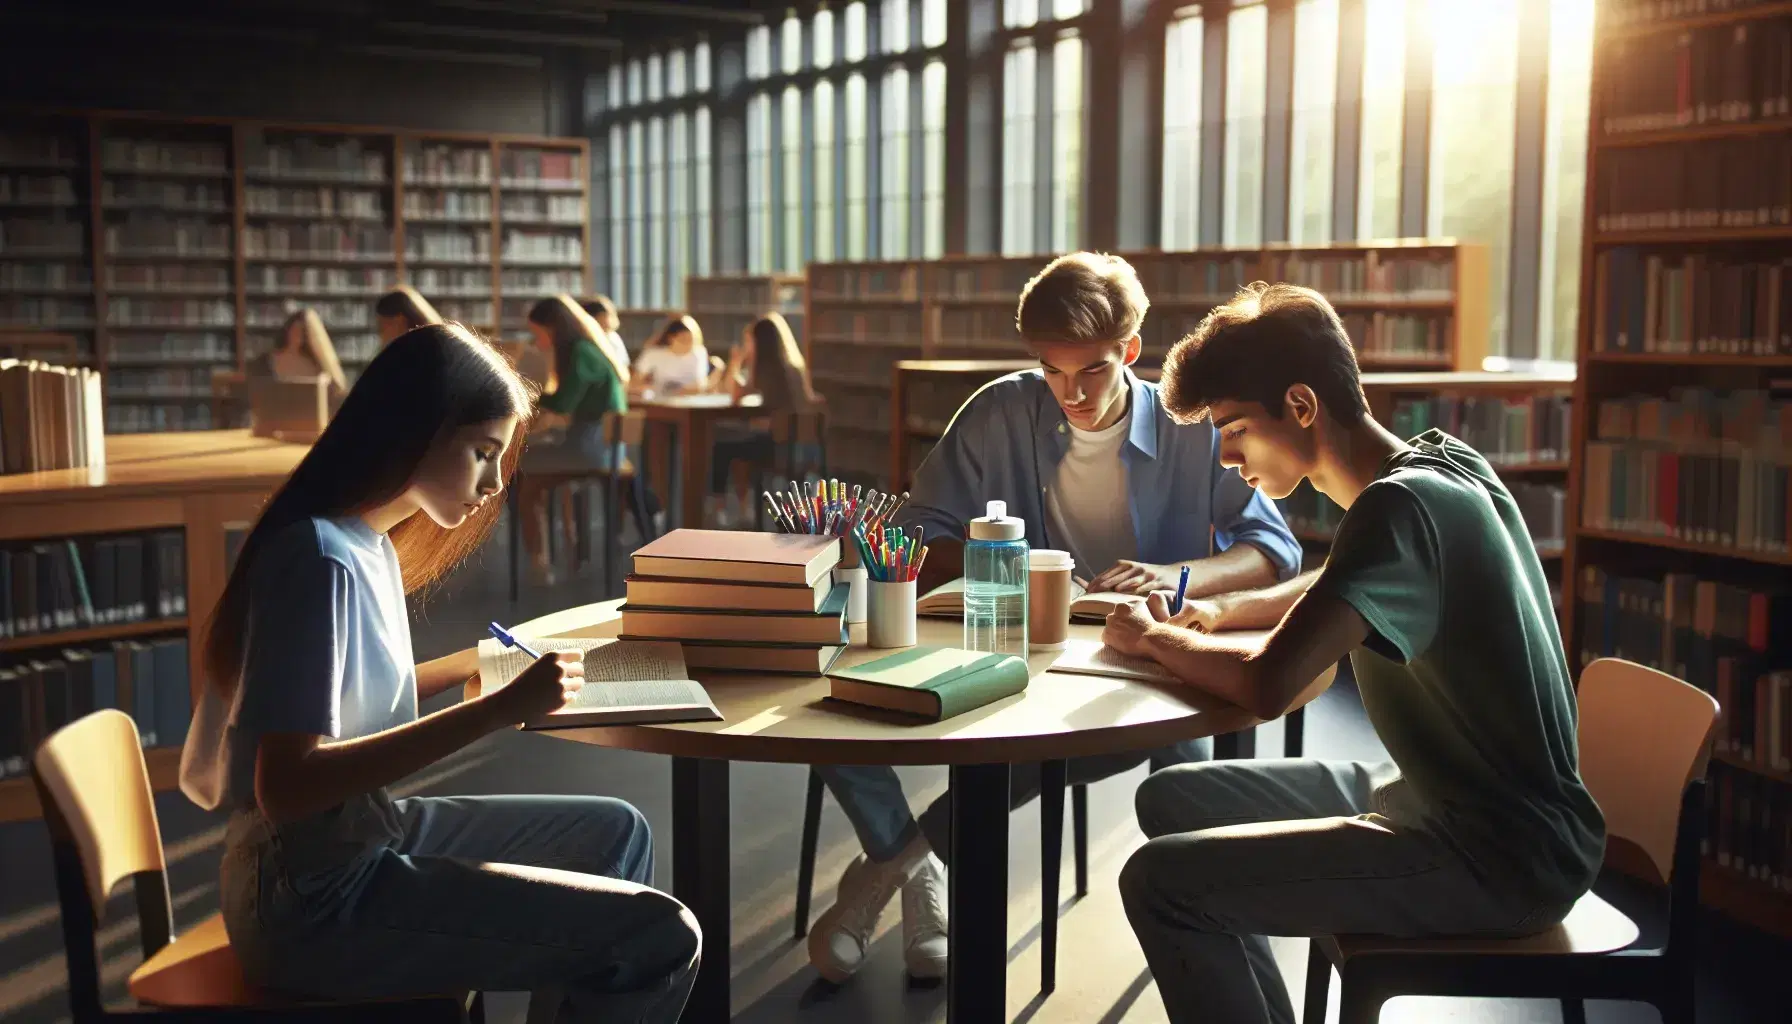 Estudiantes concentrados estudiando en biblioteca con libros y cuadernos sobre mesa redonda, luz natural entrando por ventana grande.